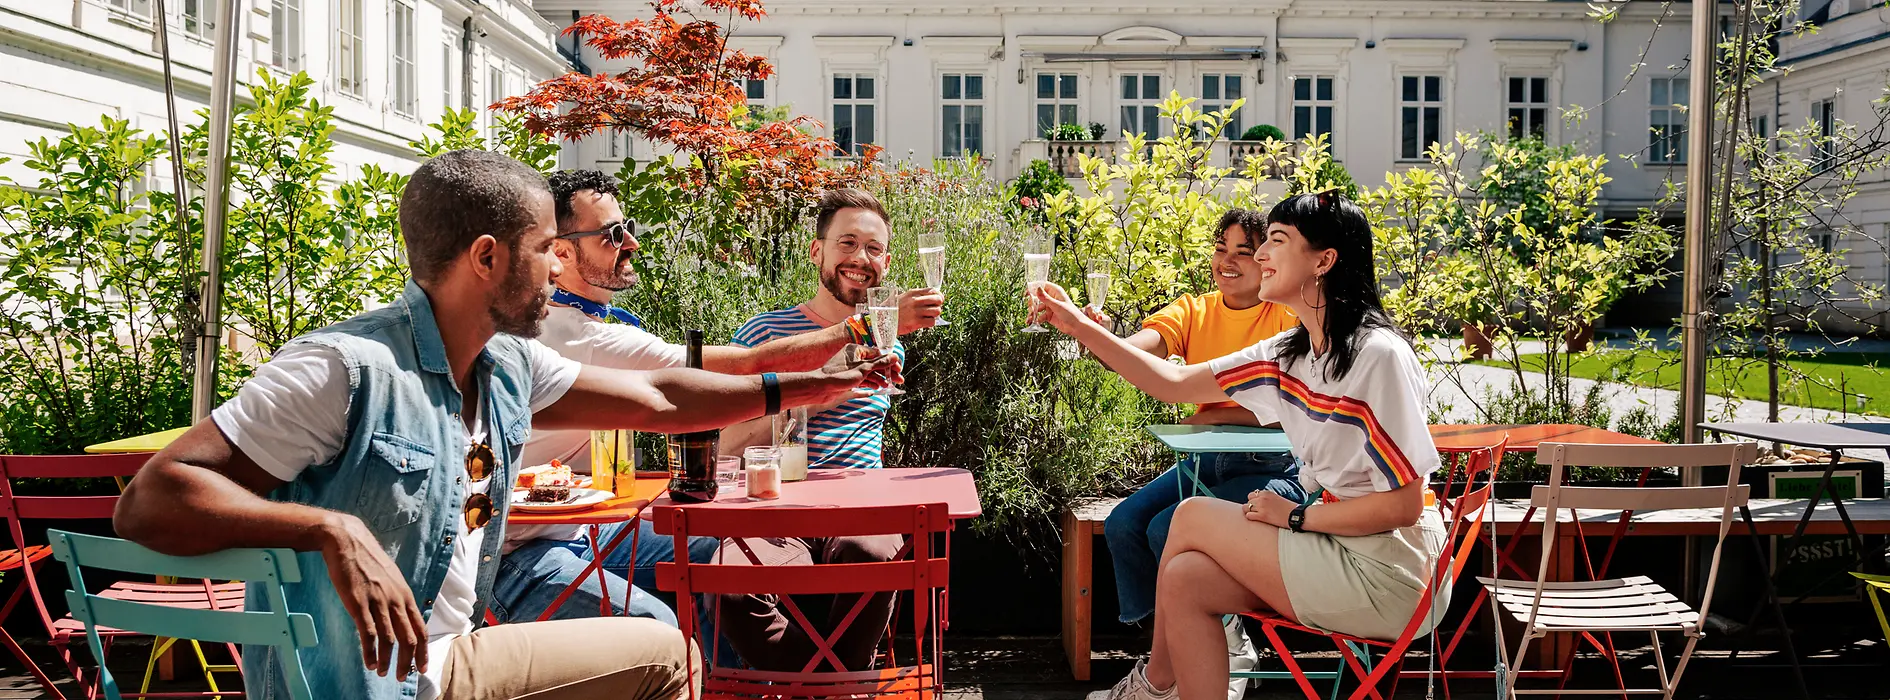 Grupa młodych ludzi pijących razem w ogródku piwnym